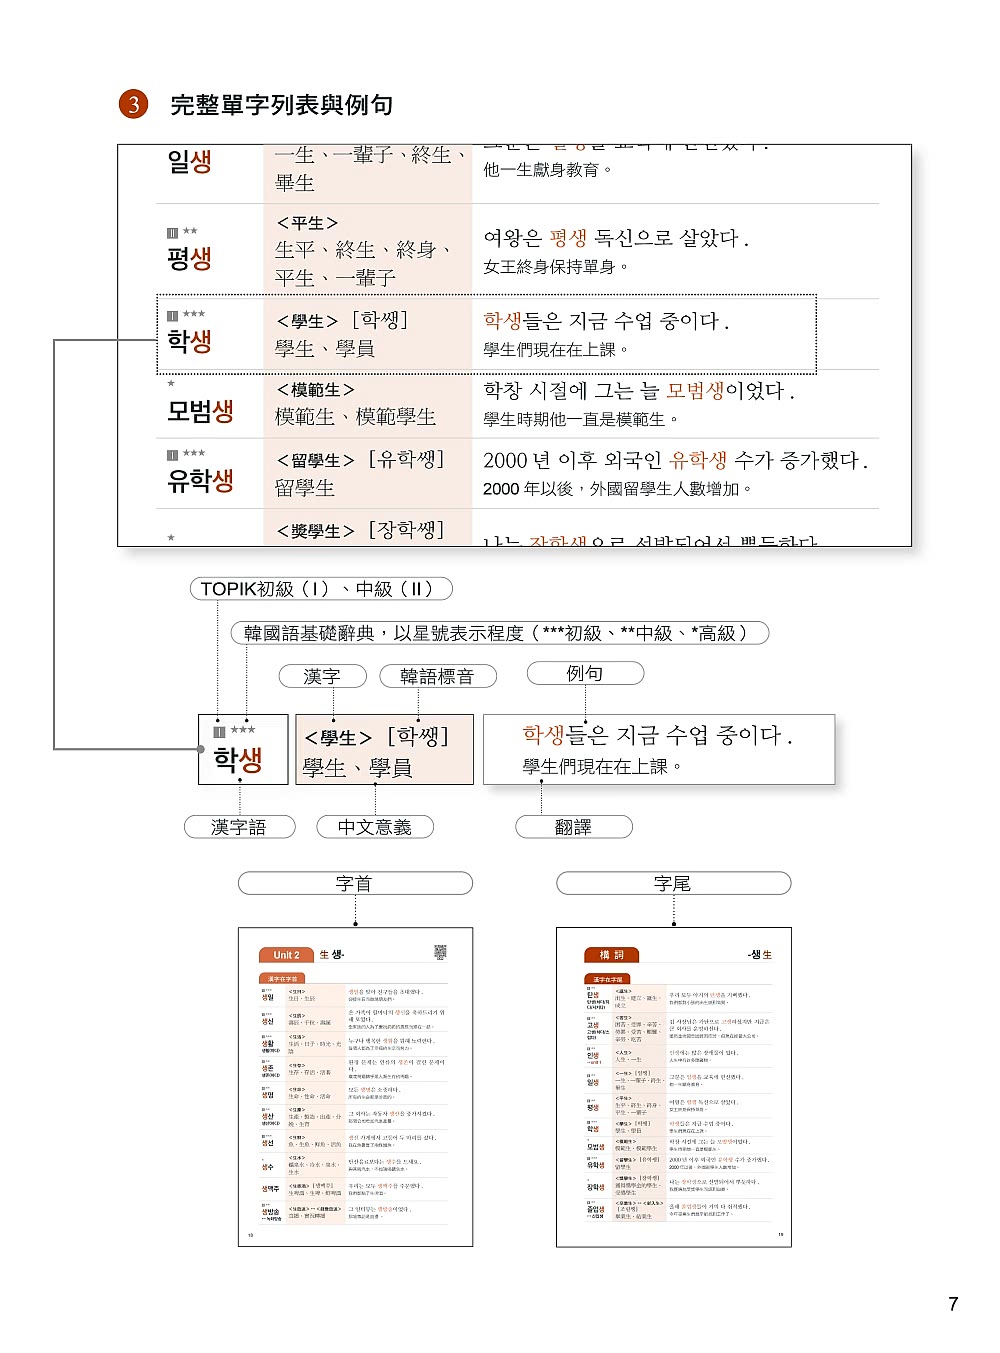 我的第一本韓語語源記單字：外交官的韓語老師教你用50個語源輕鬆記住2000個韓語單字（附QR碼線上音檔）